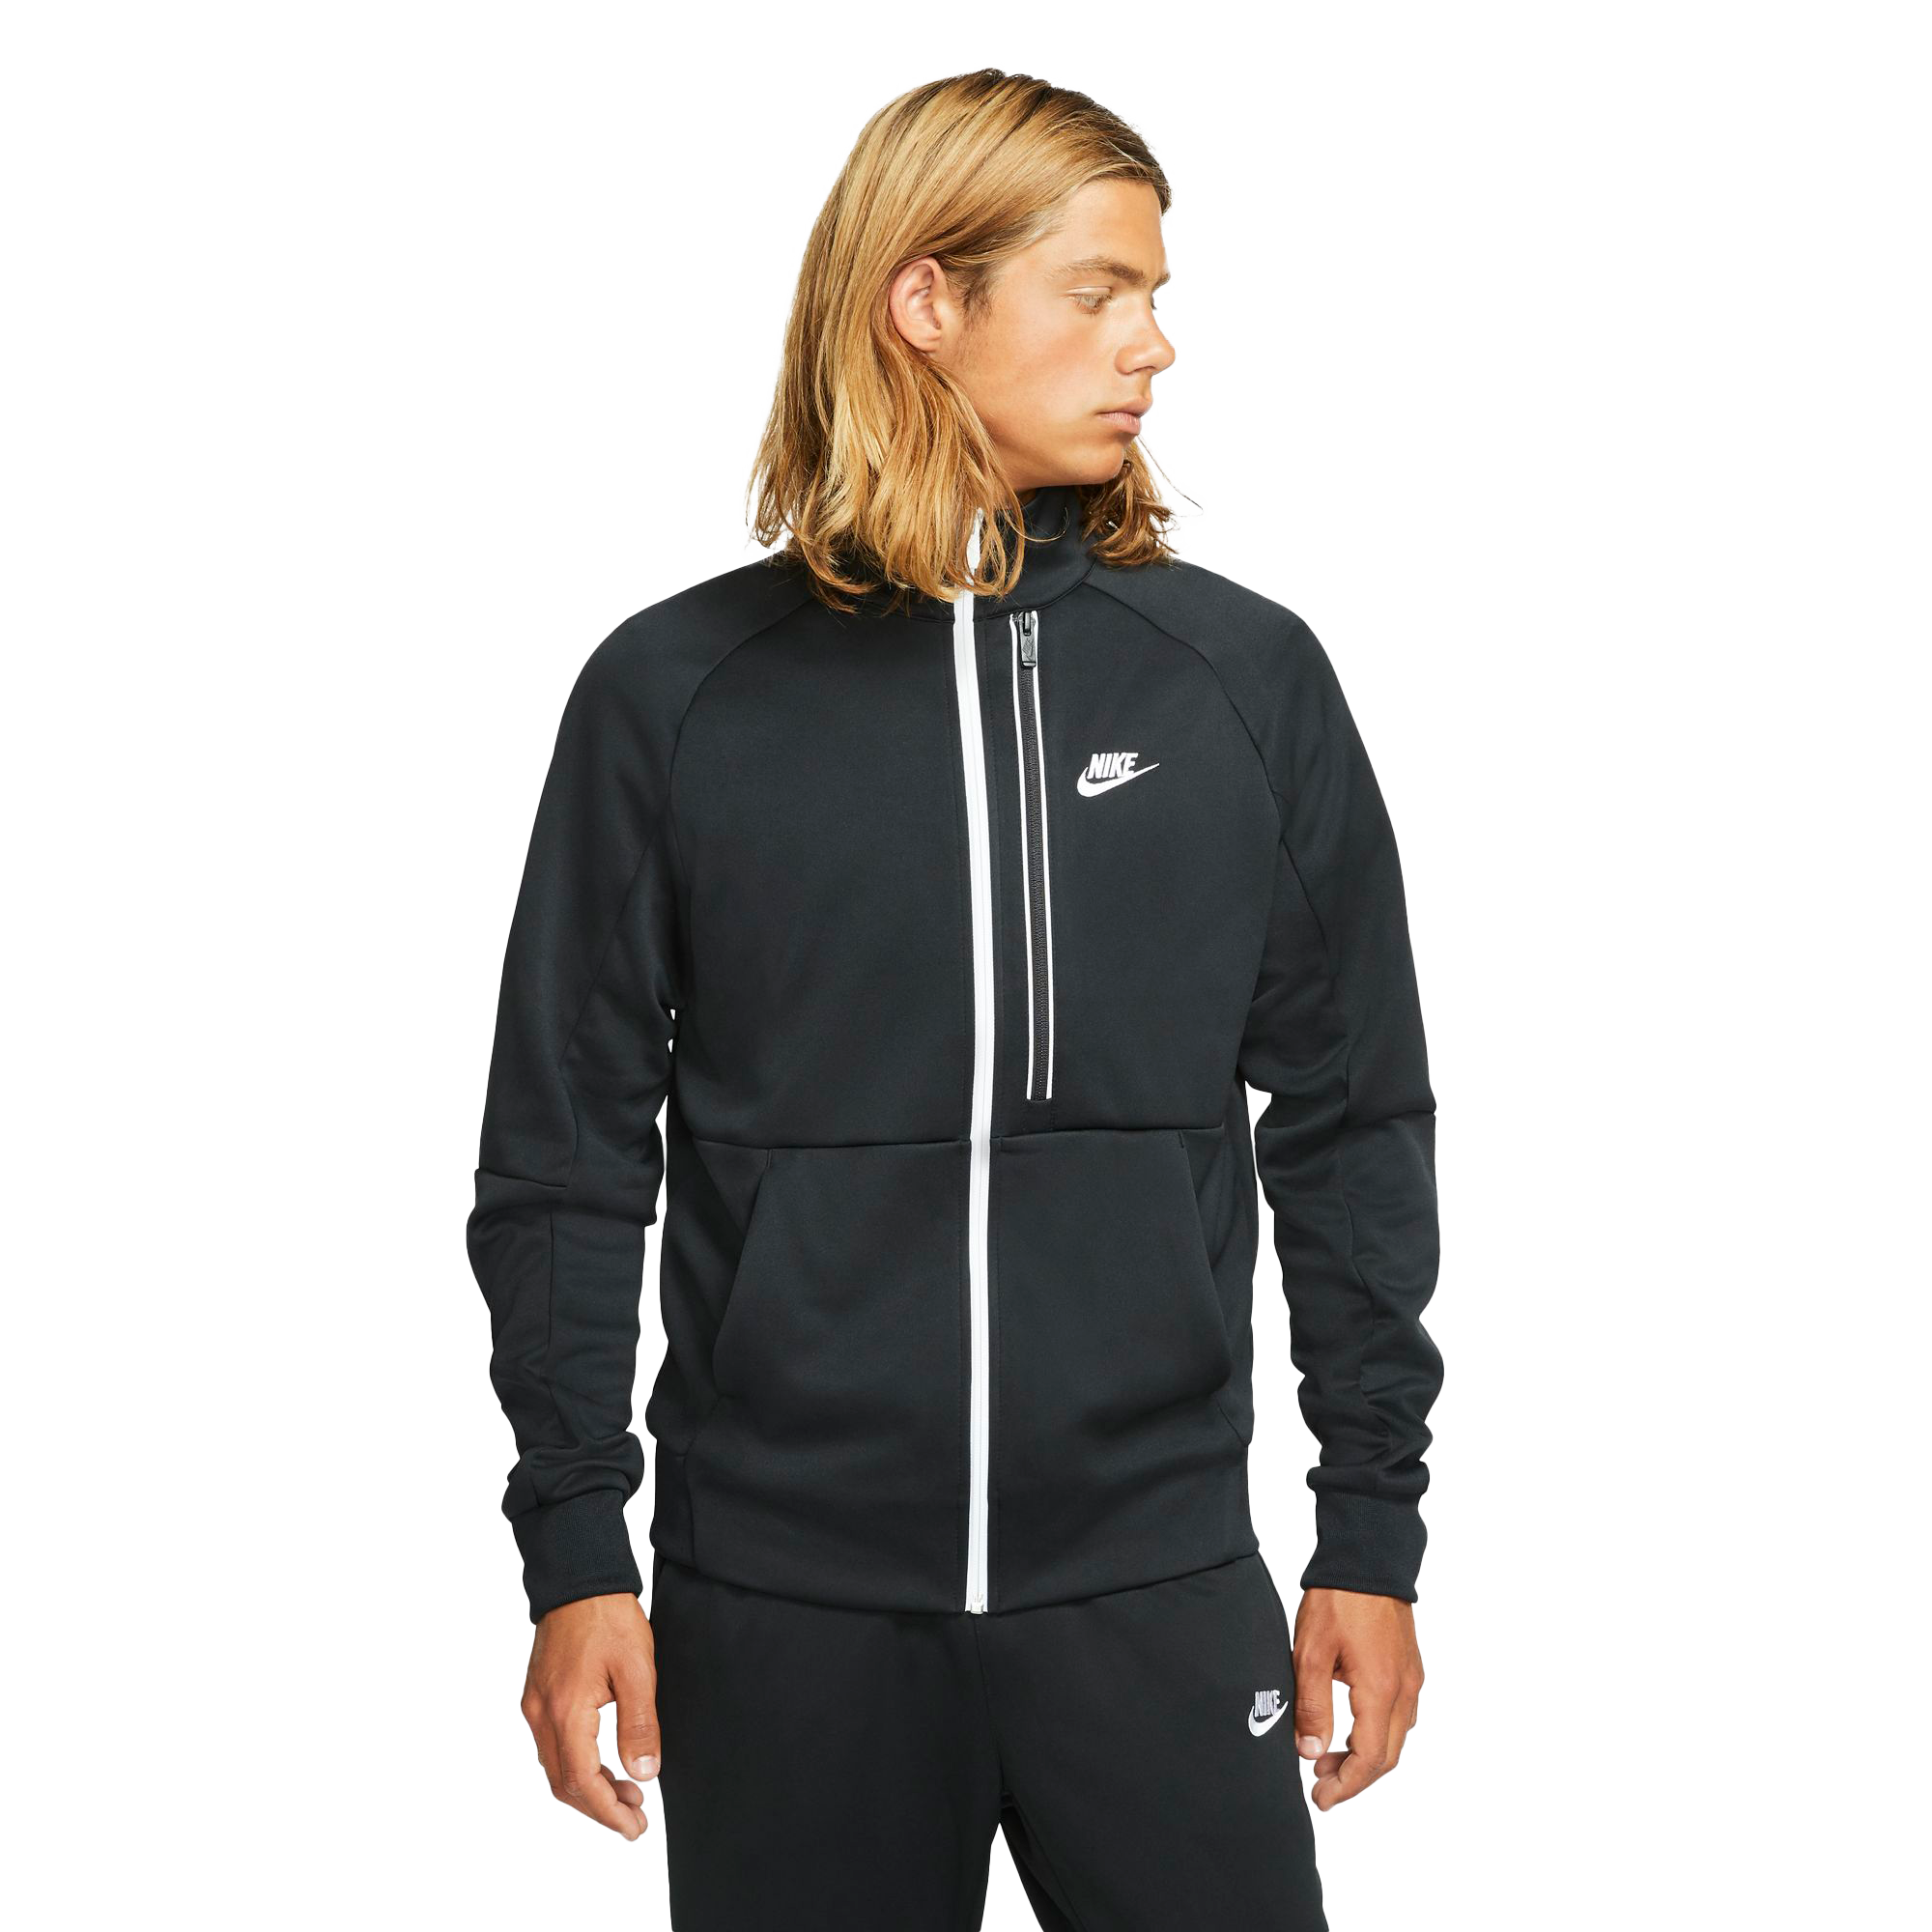 Nike Men's Sportswear Tribute N98 Jacket-Khaki, Size: XL, Polyester/Cotton